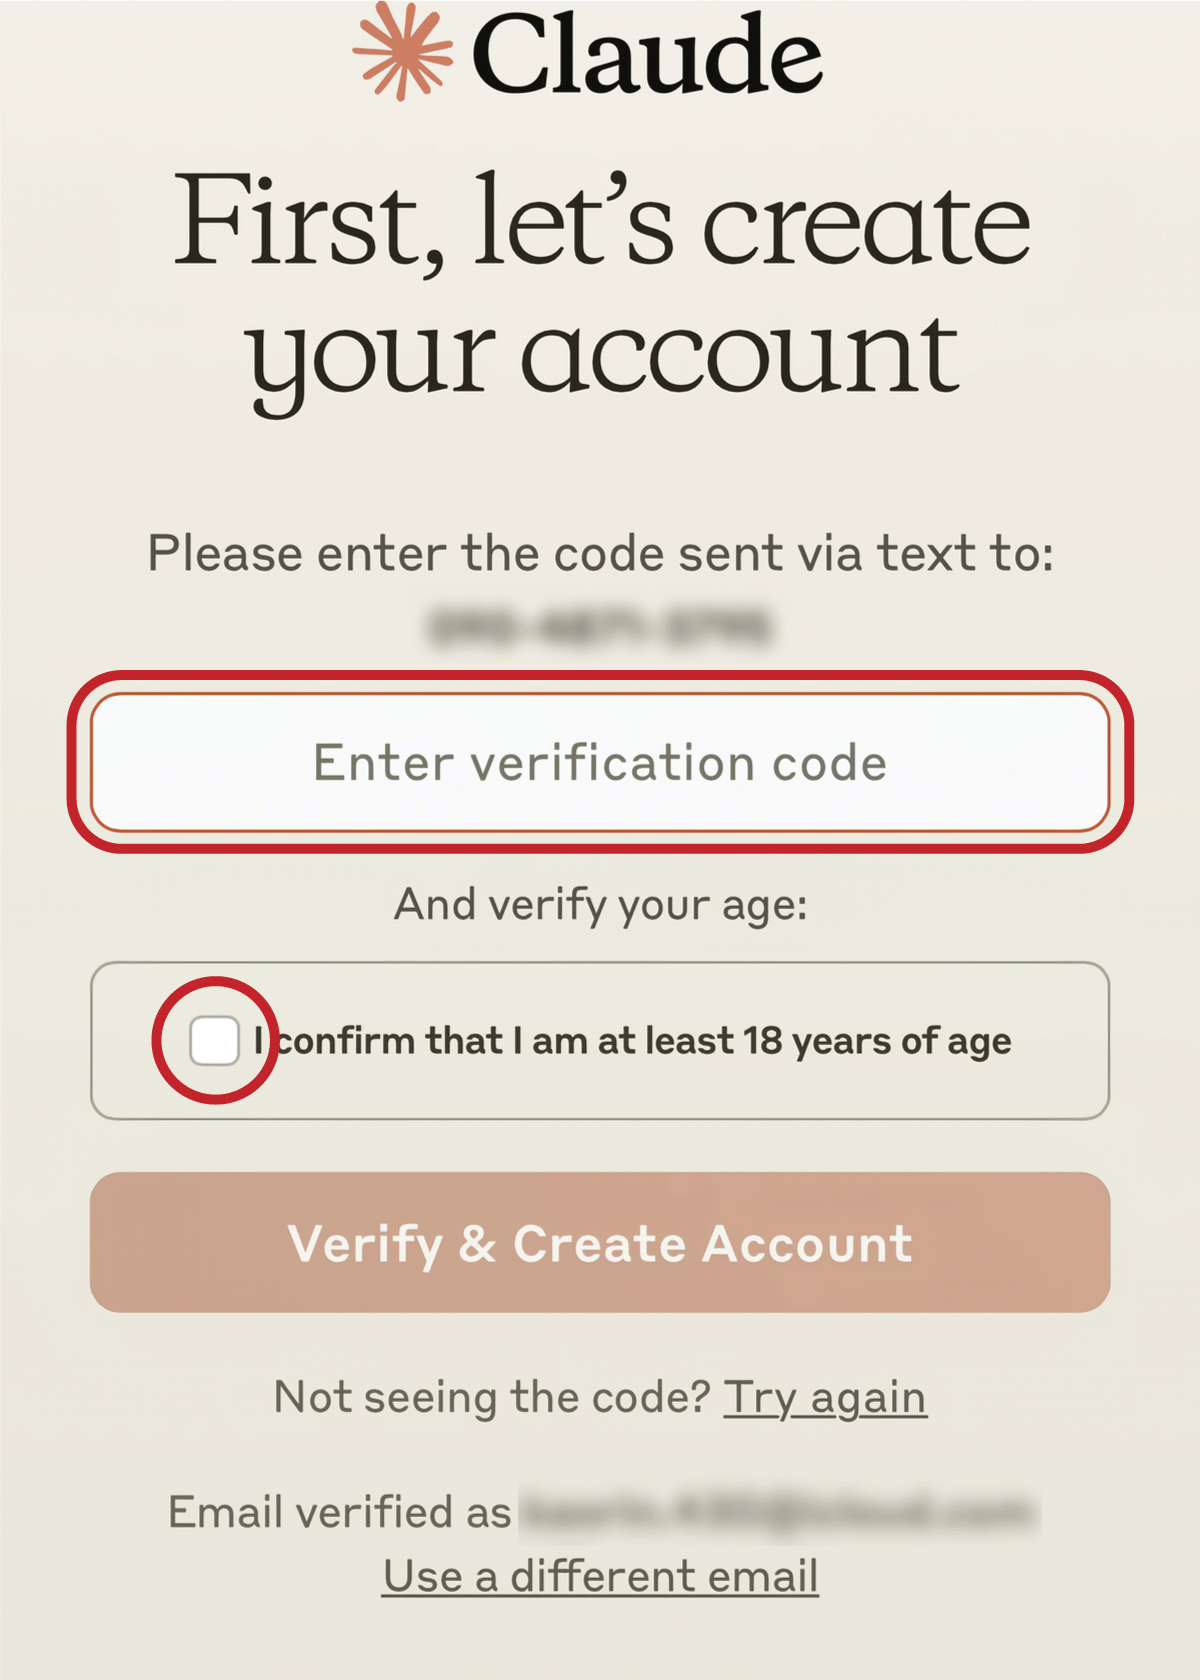 認証コードと18歳以上であることを確認して「Verify & Create Account」をタップする場面のスクリーンショット